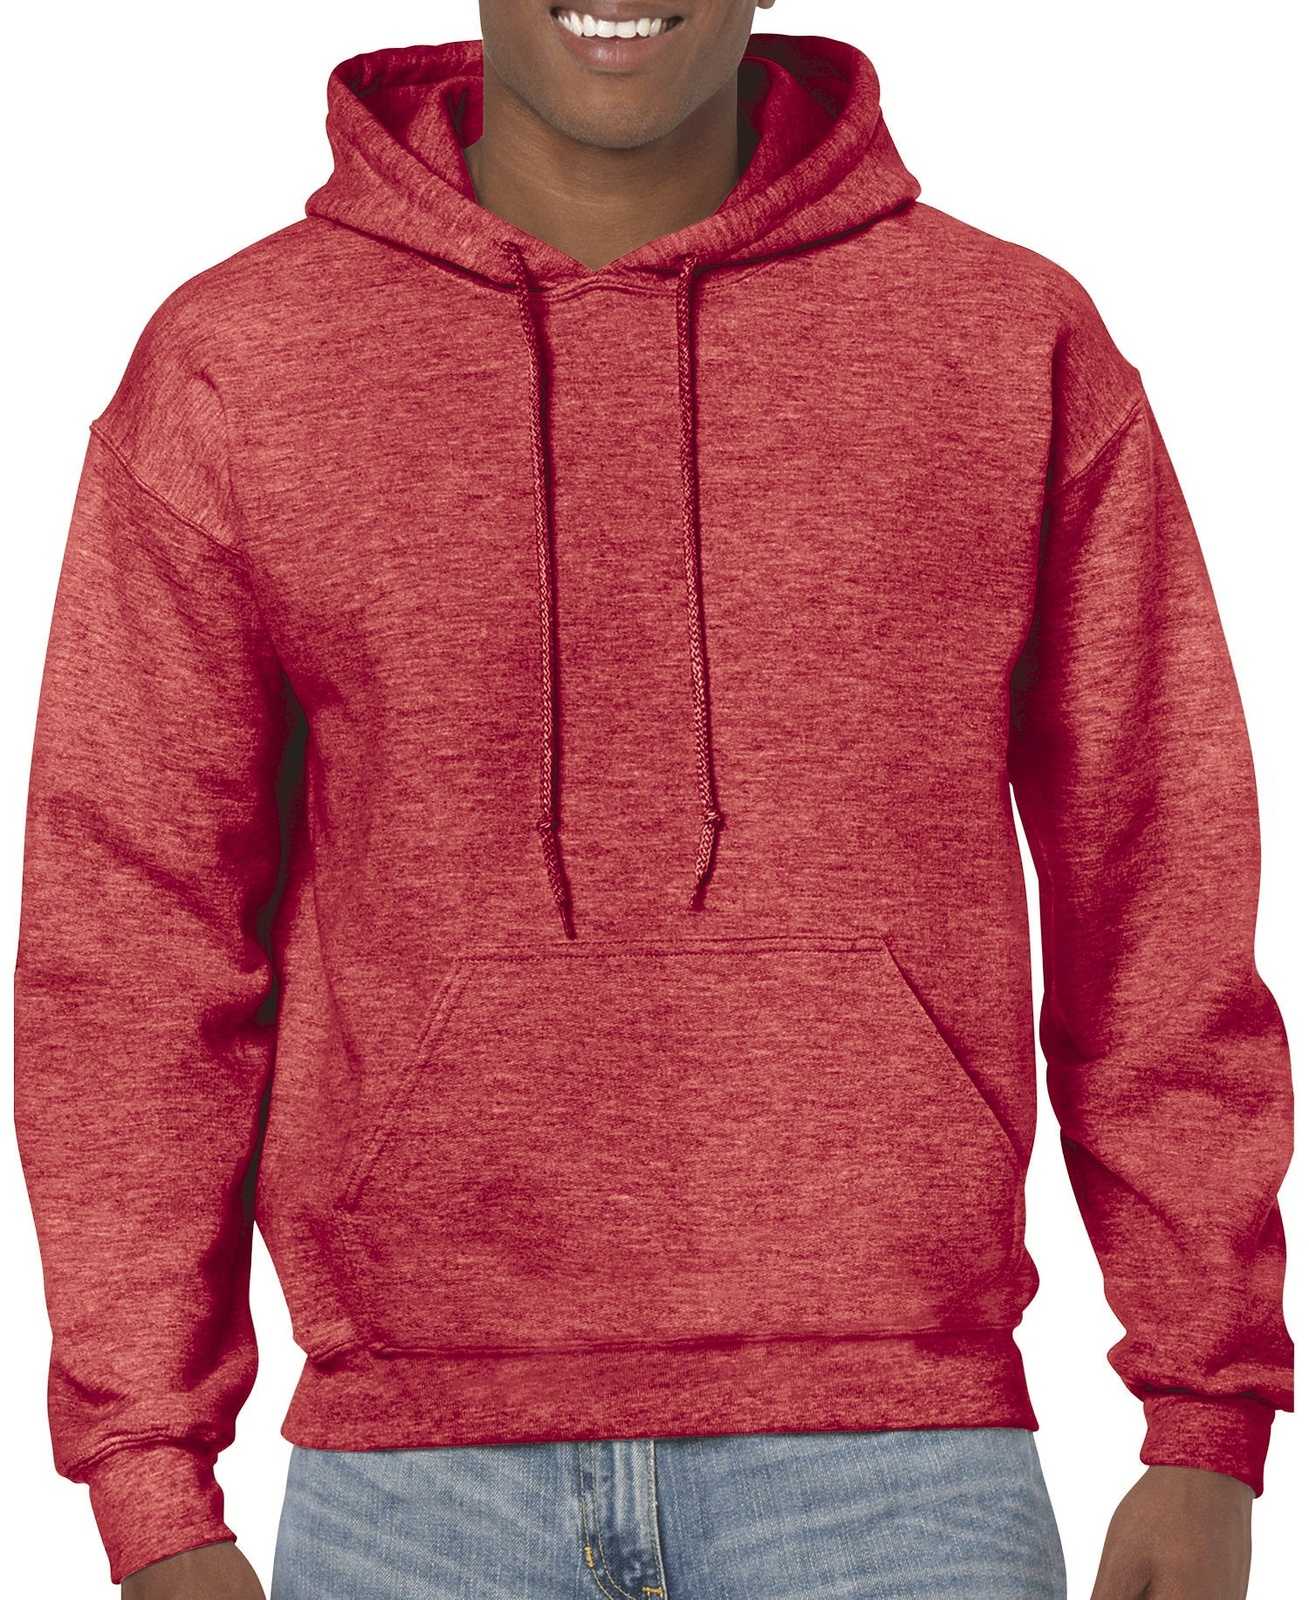 Gildan 18500 Heavy Blend Hooded Sweatshirt - Heather Sport Scarlet Red - HIT a Double